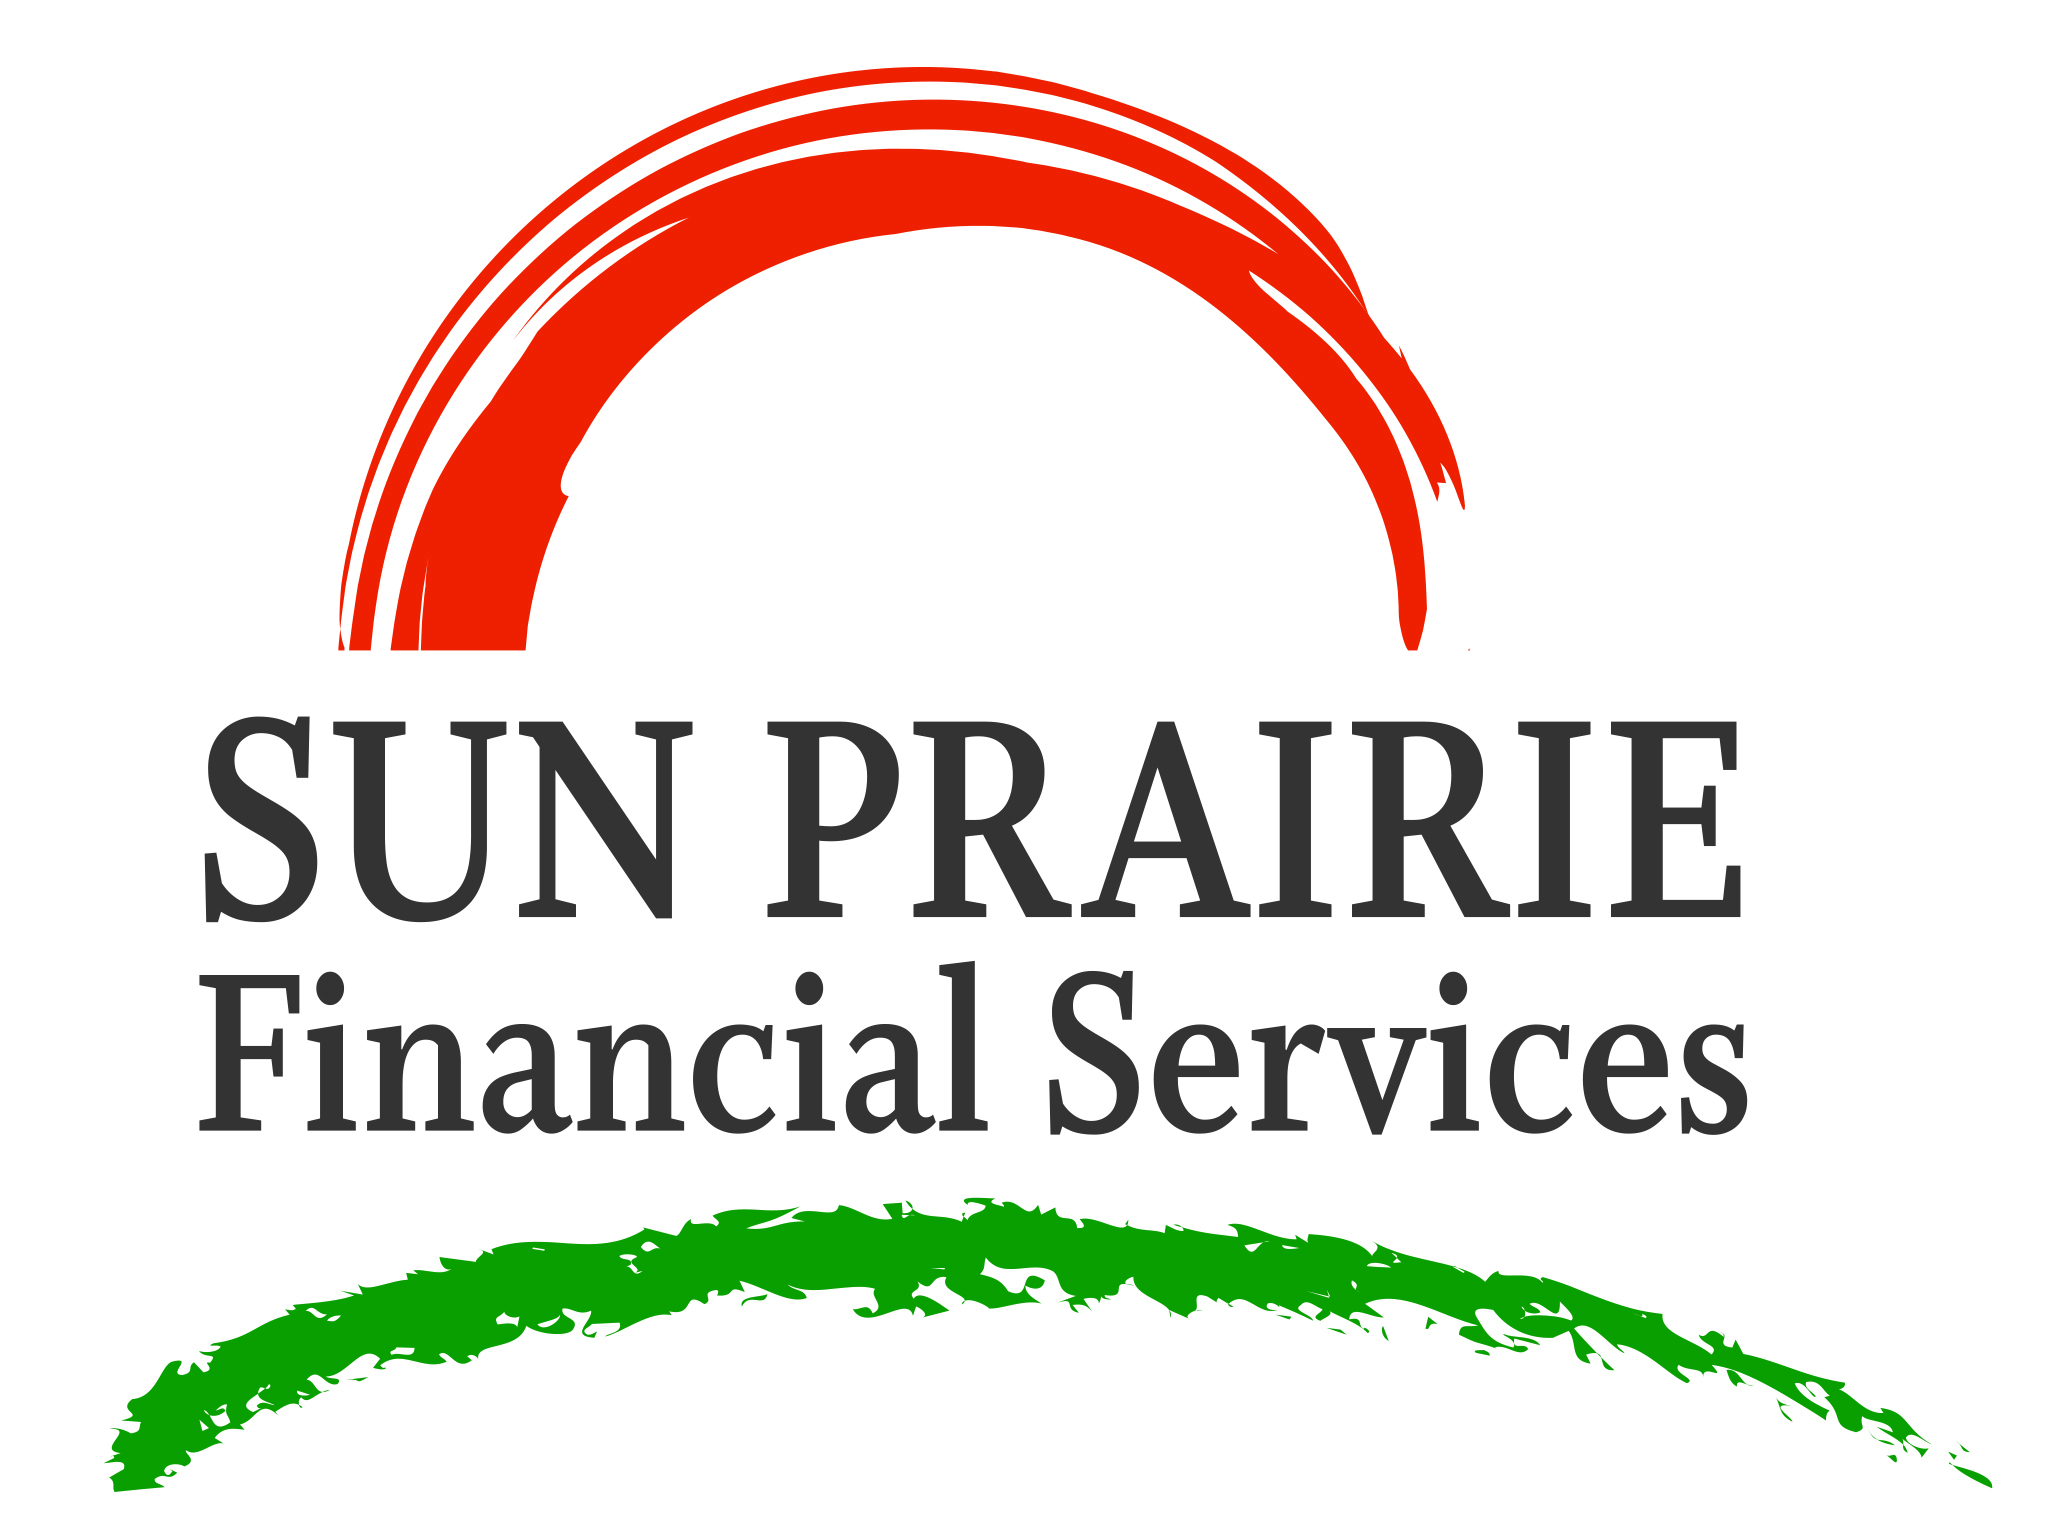 Sun Prairie Financial Services logo